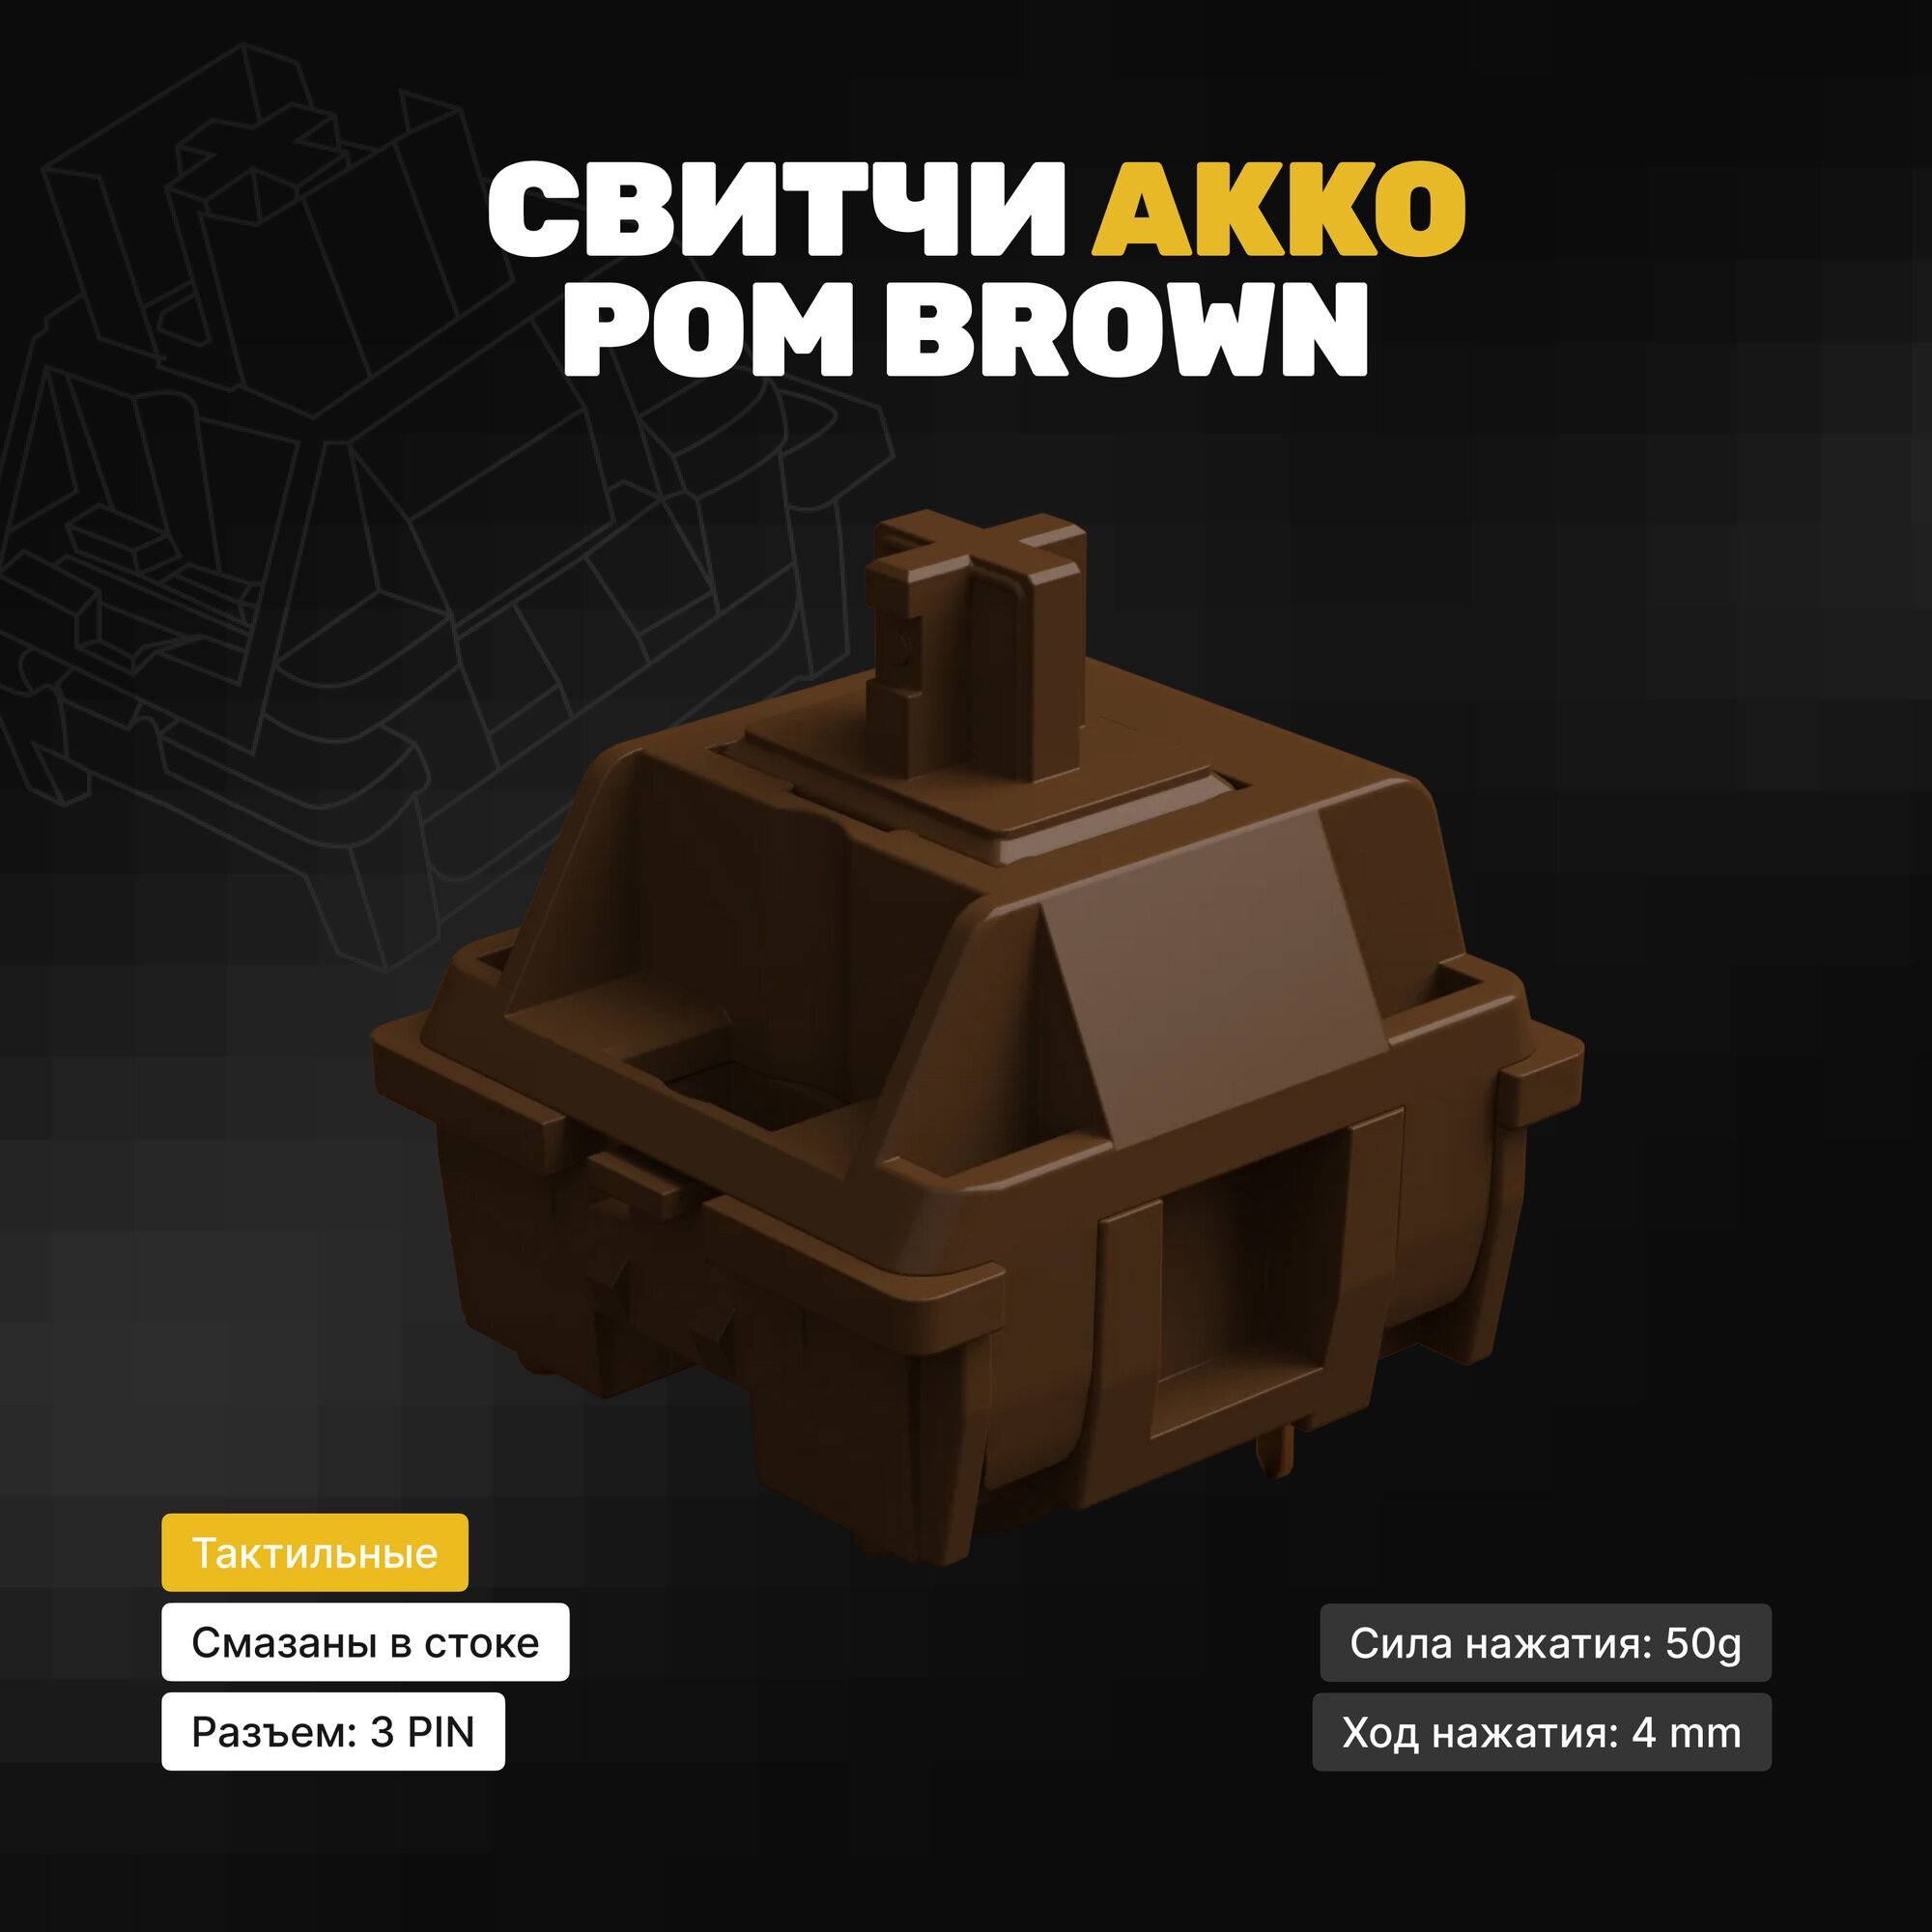 Механические переключатели AKKO POM Brown (90 штук) тактильные 5-pin 50 грамм